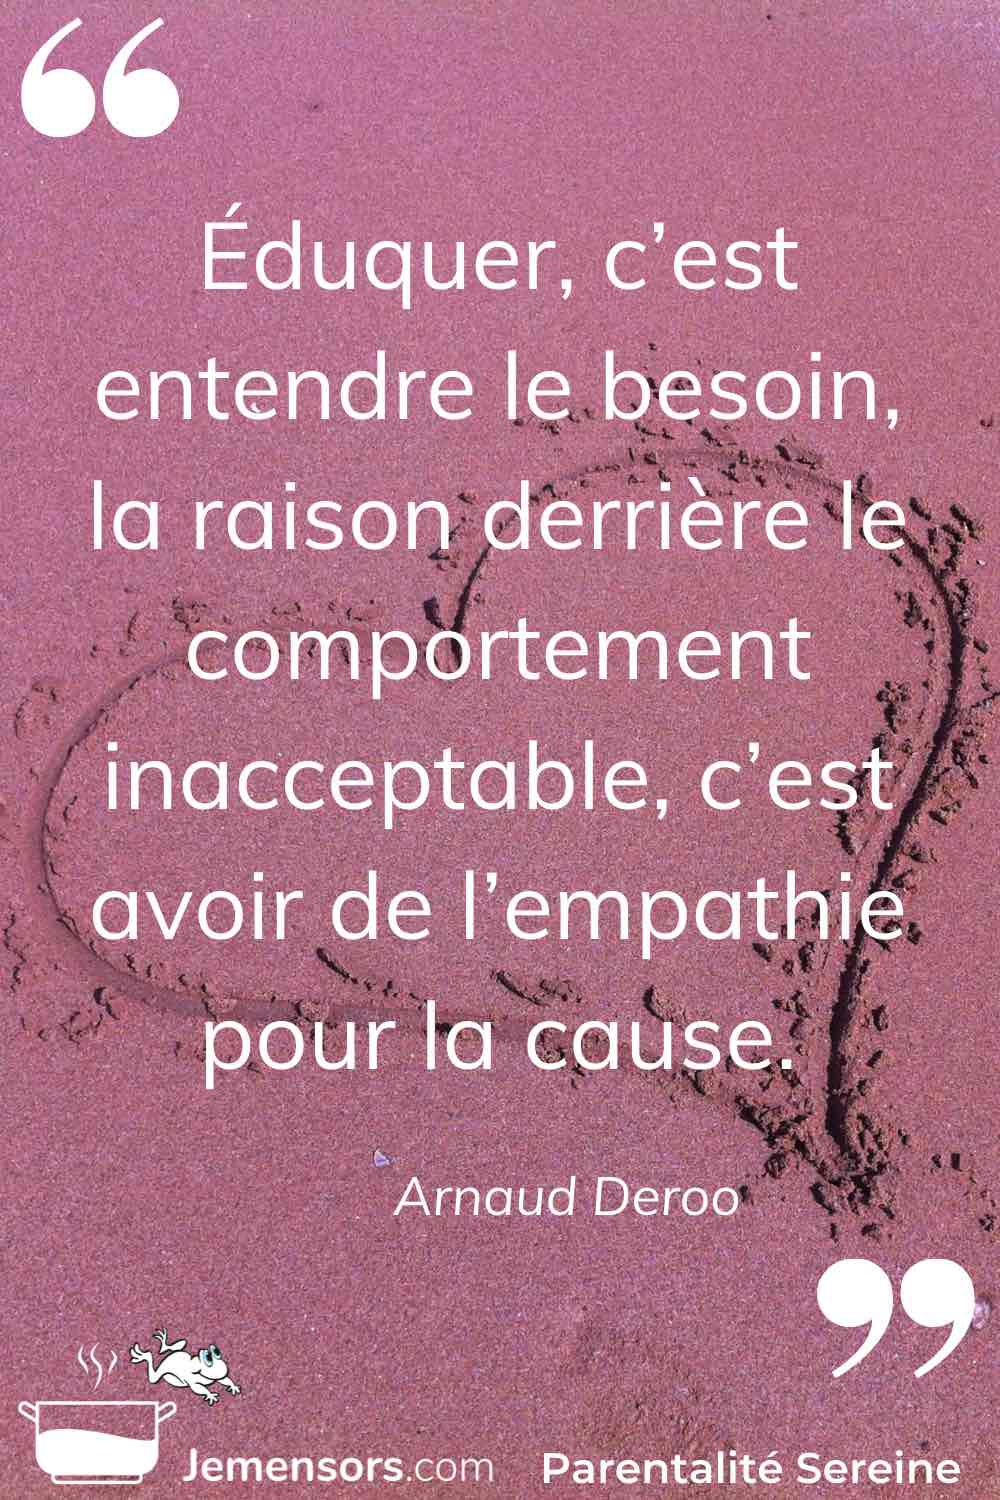 "Éduquer, c’est entendre le besoin, la raison derrière le comportement inacceptable, c’est avoir de l’empathie pour la cause." Arnaud Deroo